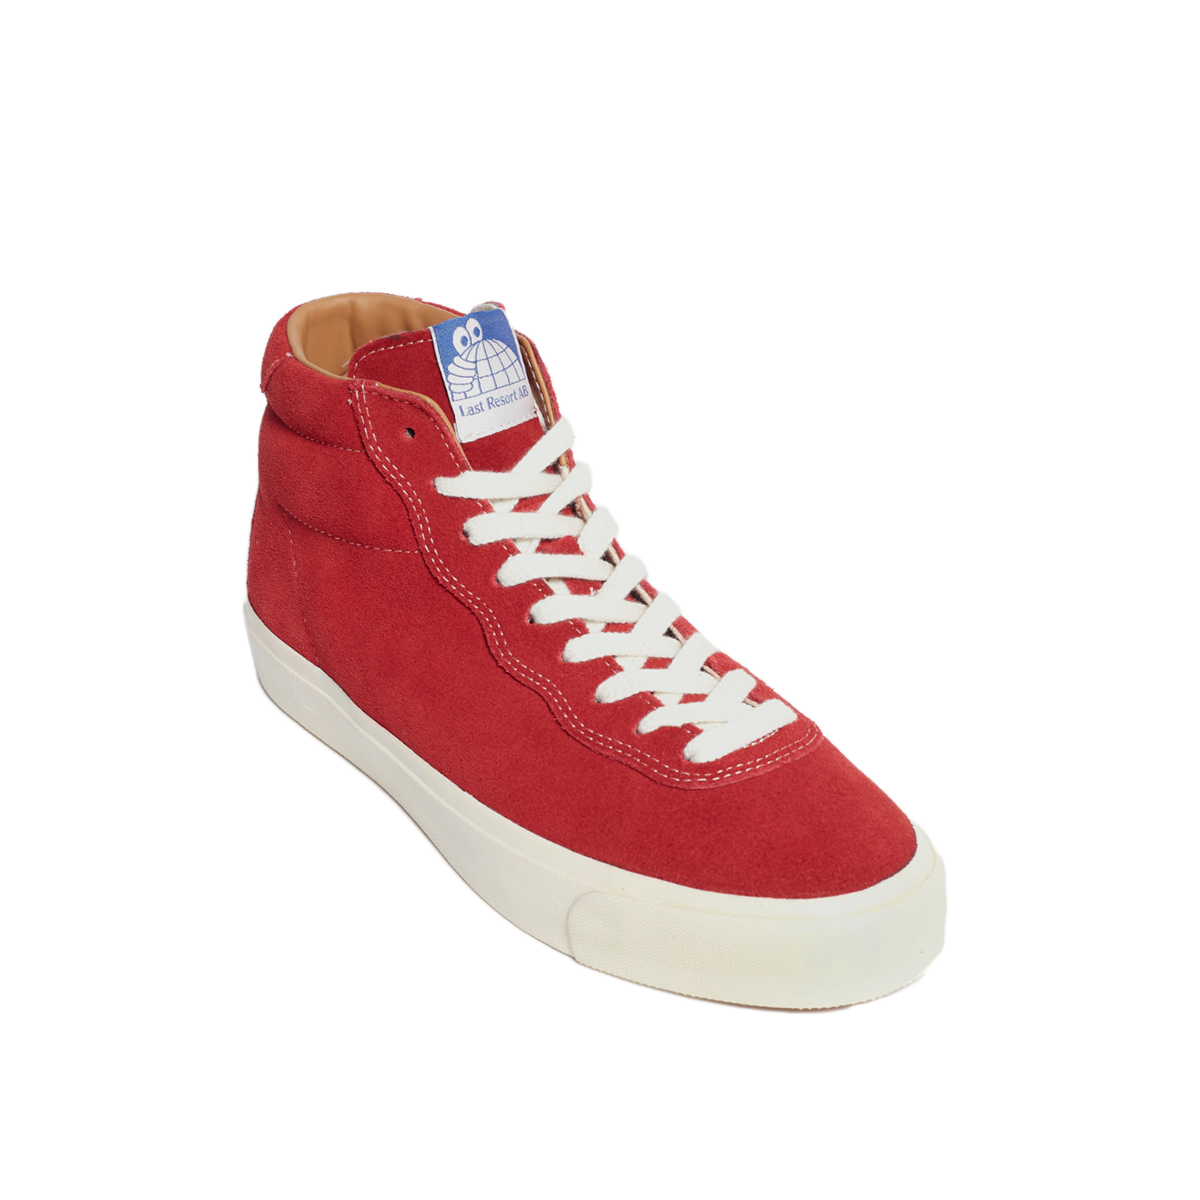 Last Resort VM001 Suede Hi Shoes - Old Red/White